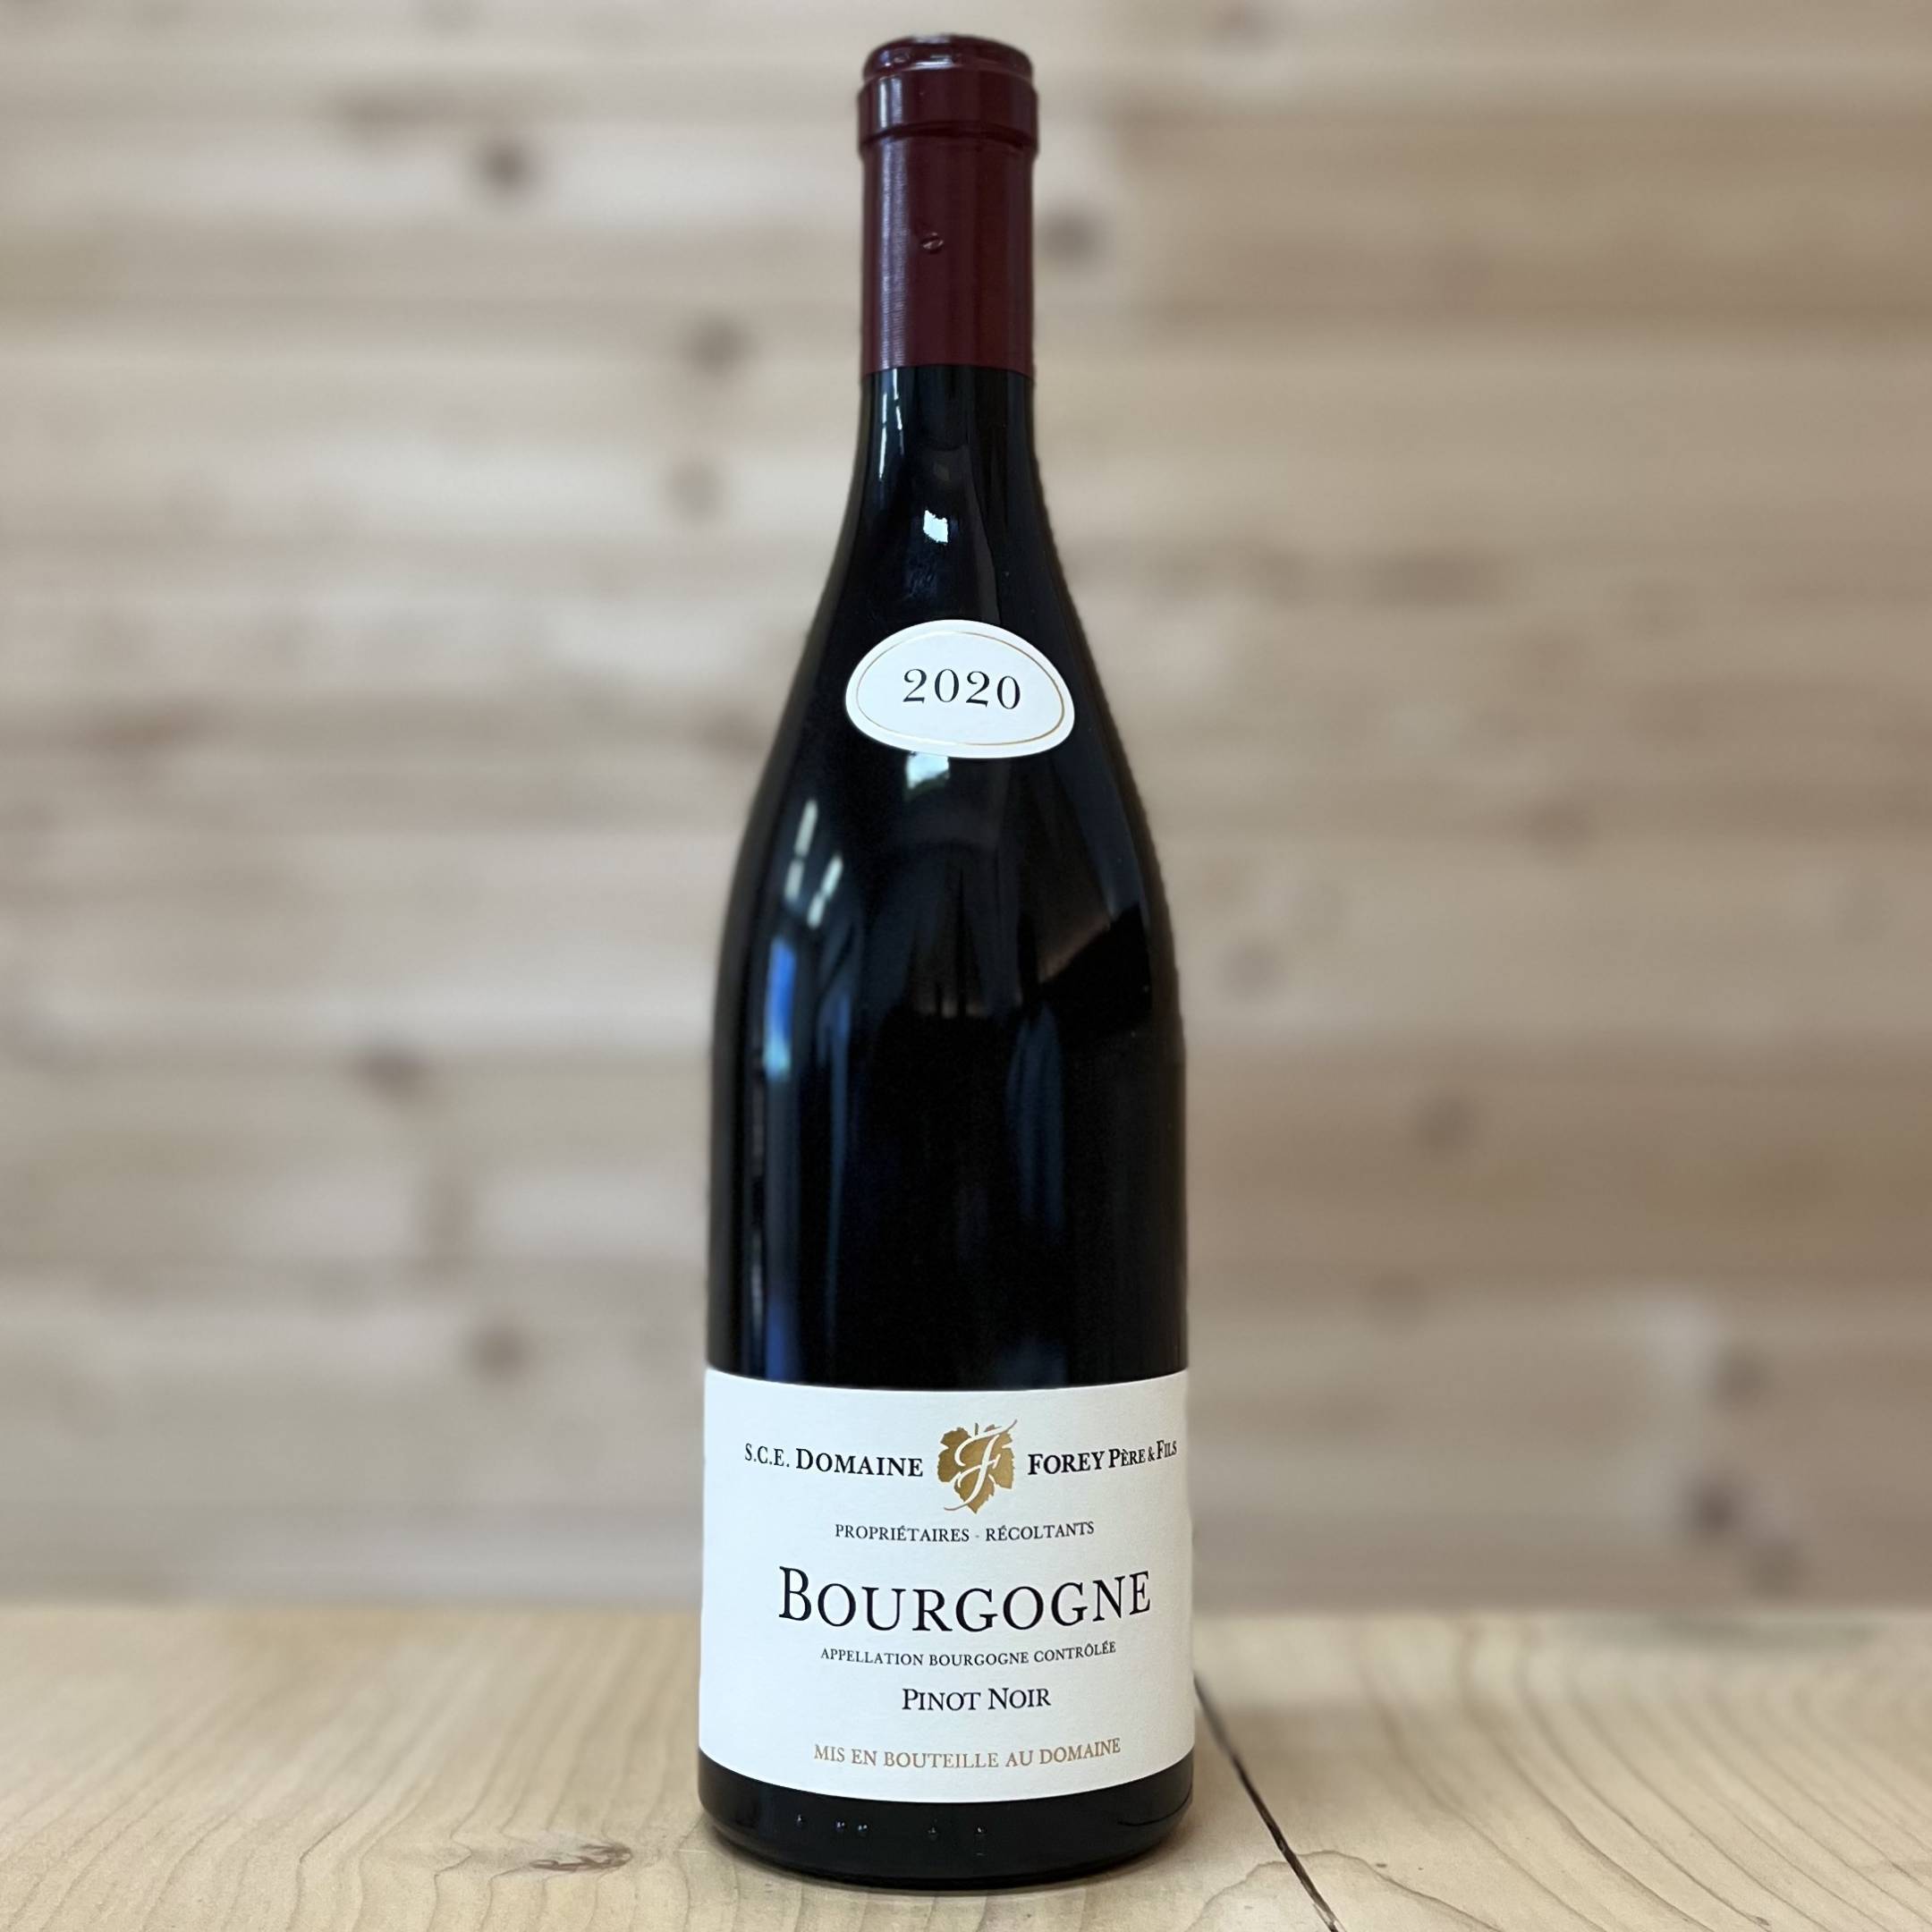 Domaine Forey Pere et Fils Bourgogne Pinot Noir 2020